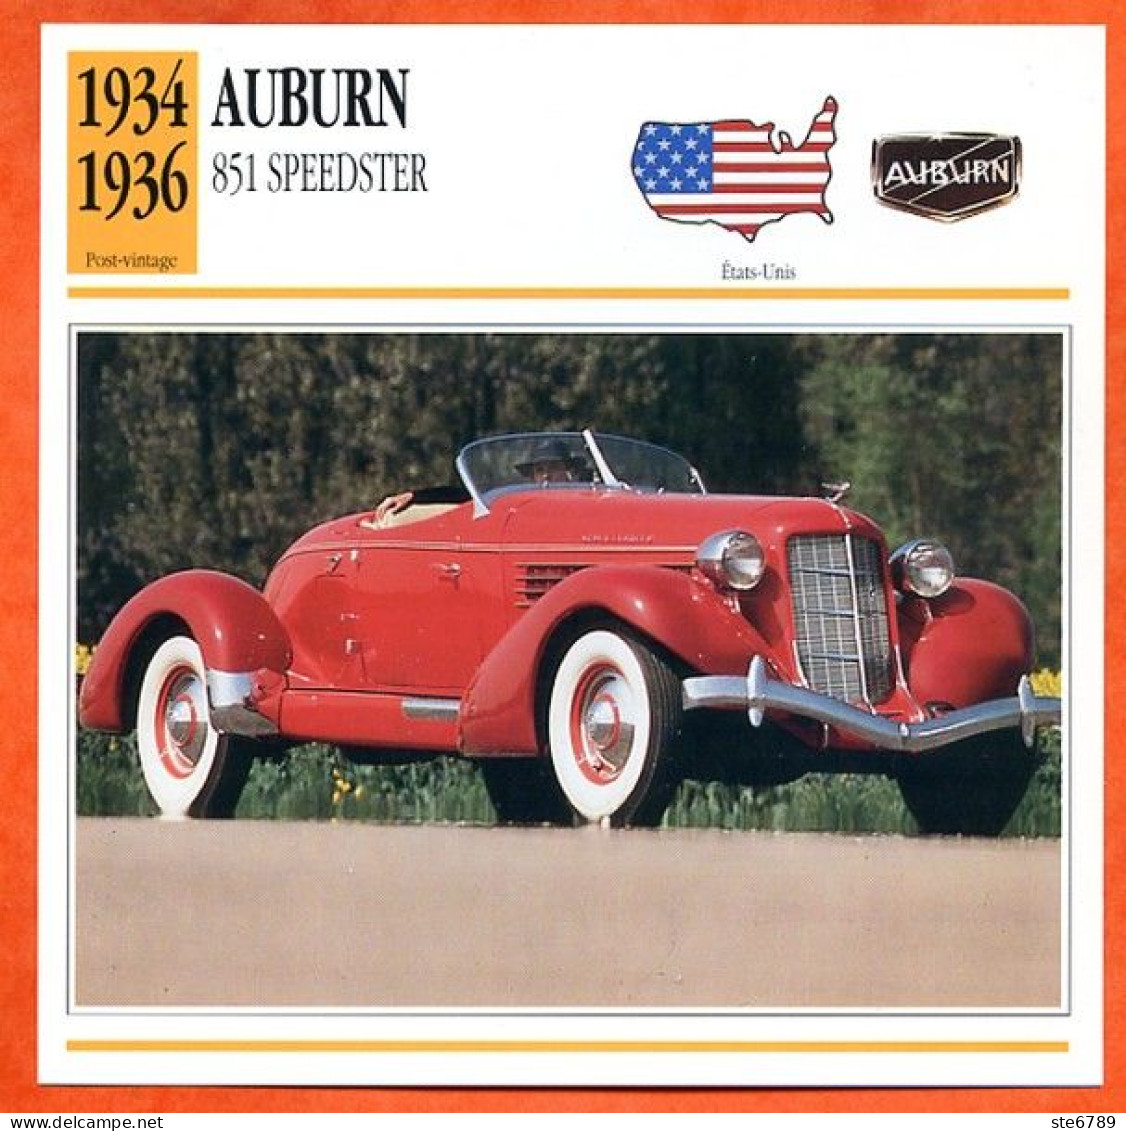 AUBURN 851 SPEEDSTER 1934 Voiture  USA  Auto Fiche Technique Automobile - Automobili